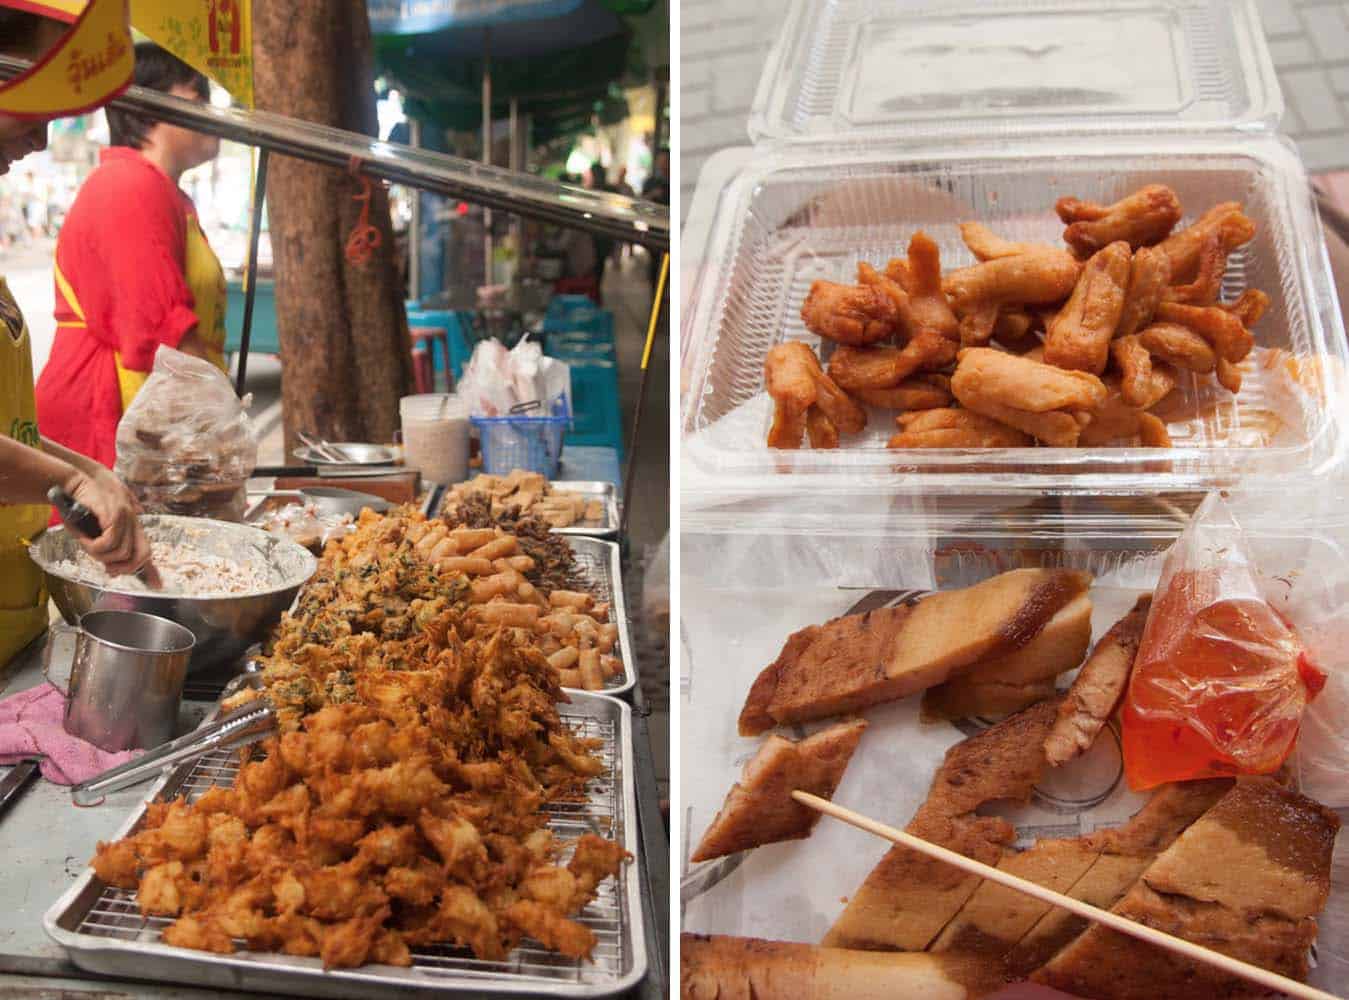 An assortment of deep fried Thai street food